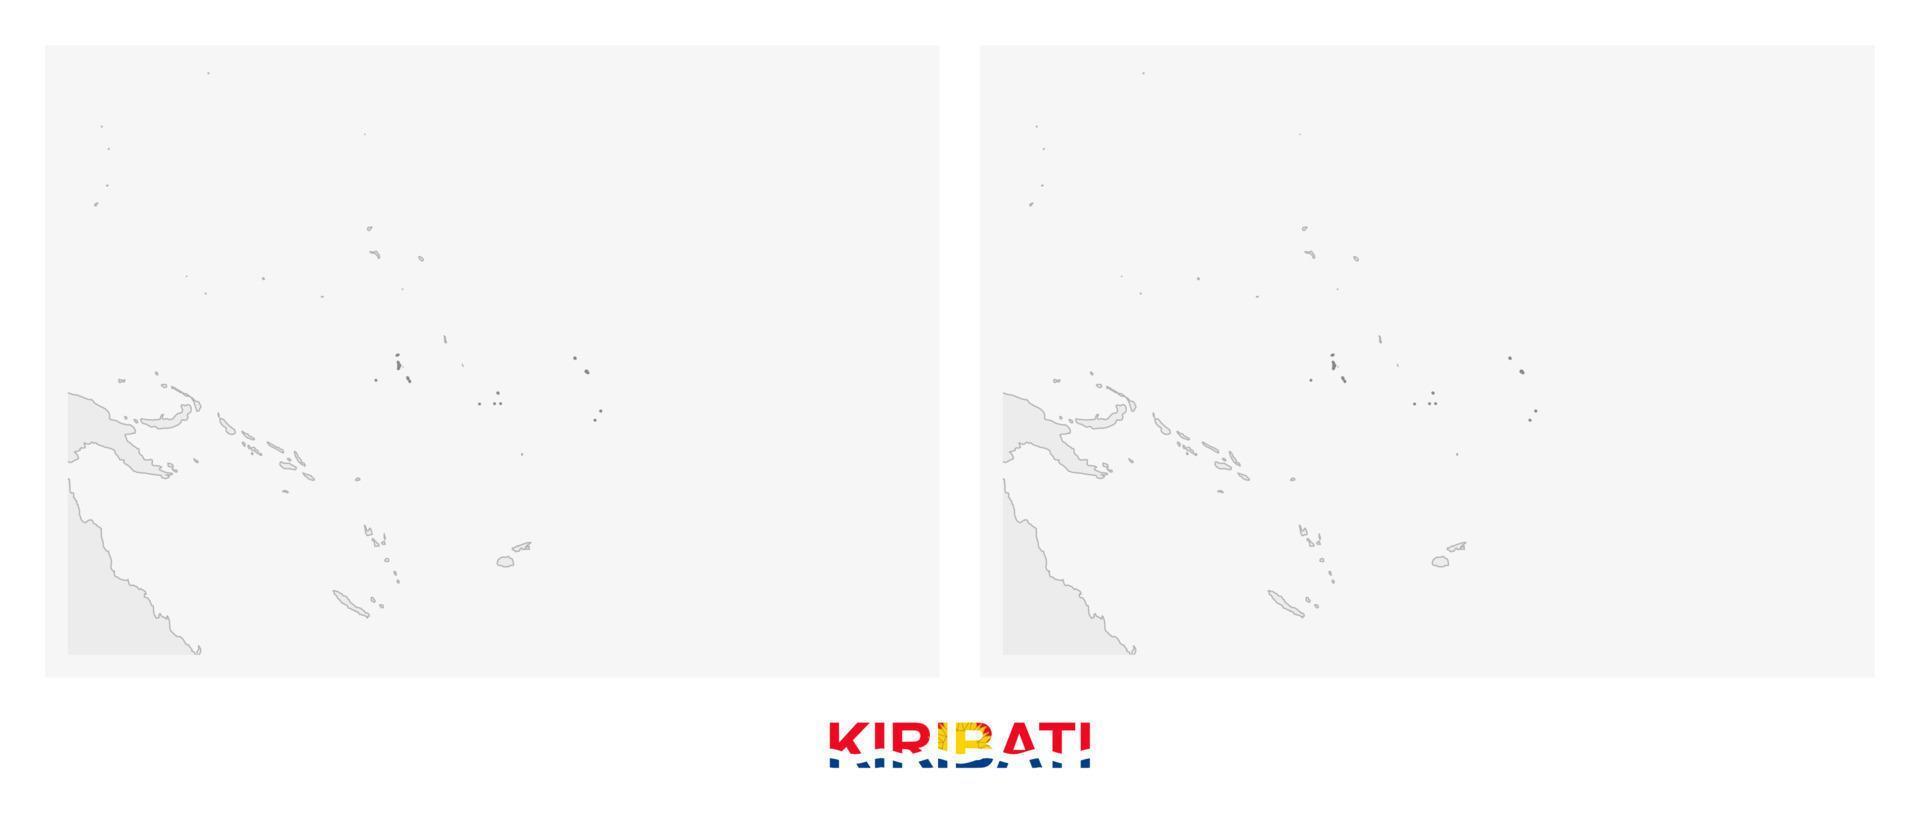 två versioner av de Karta av kiribati, med de flagga av kiribati och markerad i mörk grå. vektor